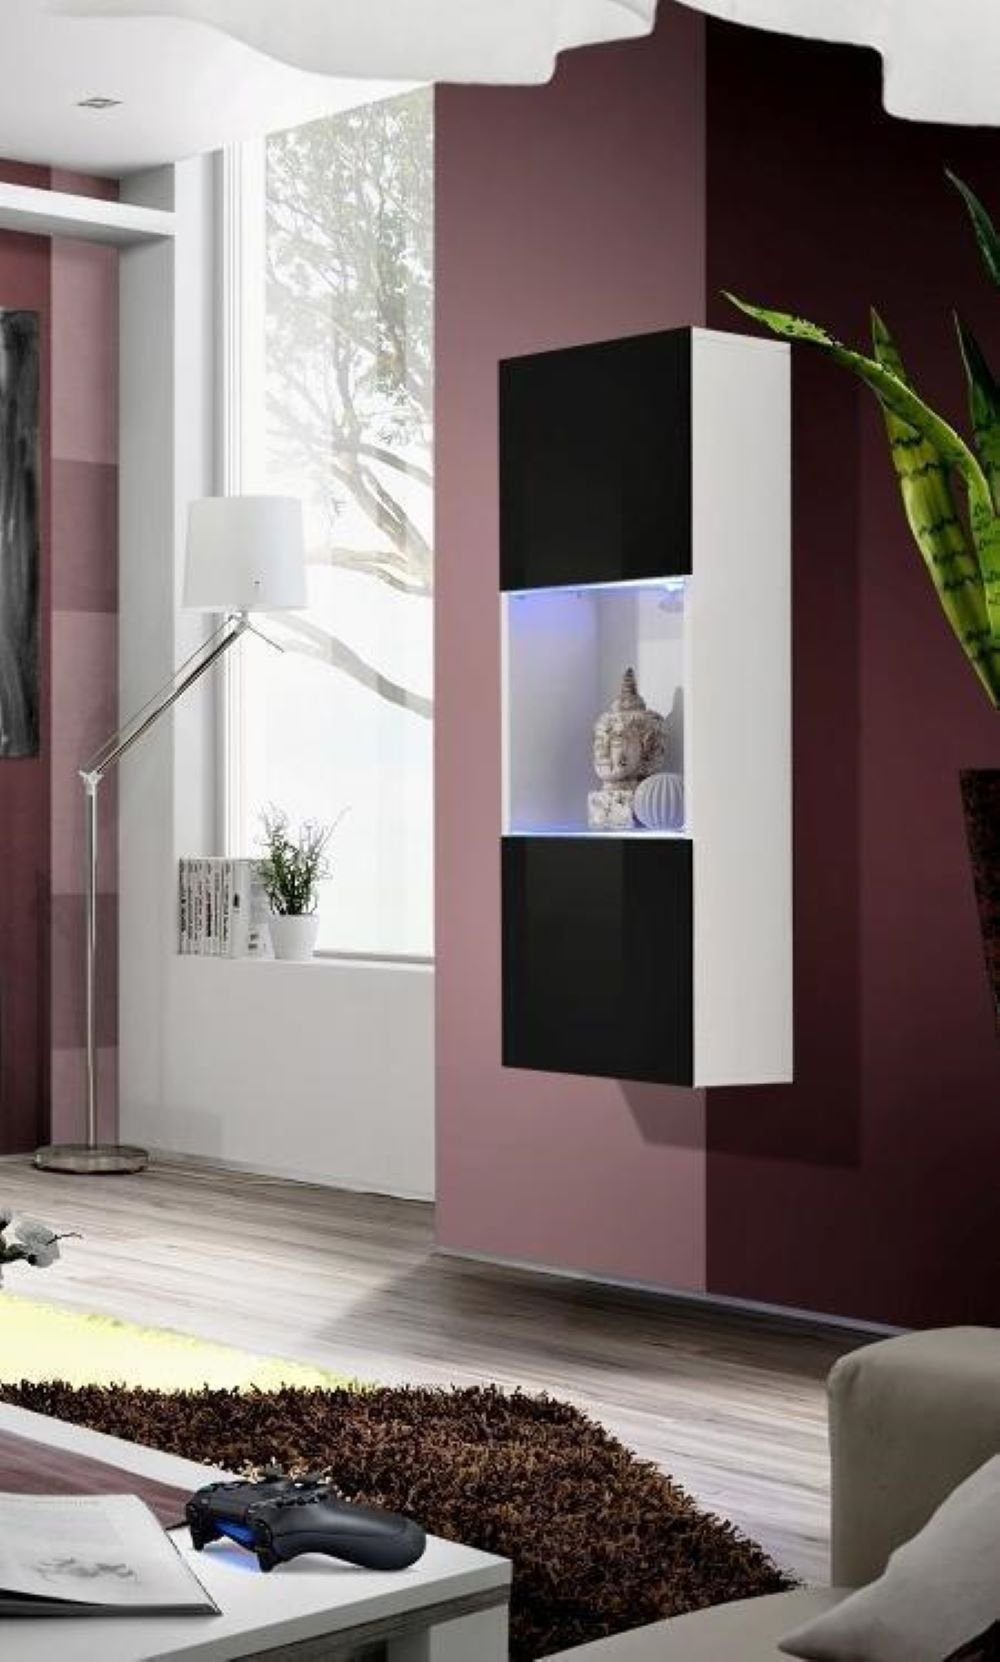 Regal Europa Wohnzimmer Modern Vitrine Made JVmoebel Luxus in Hänge Design Schrank Holz Vitrine Möbel